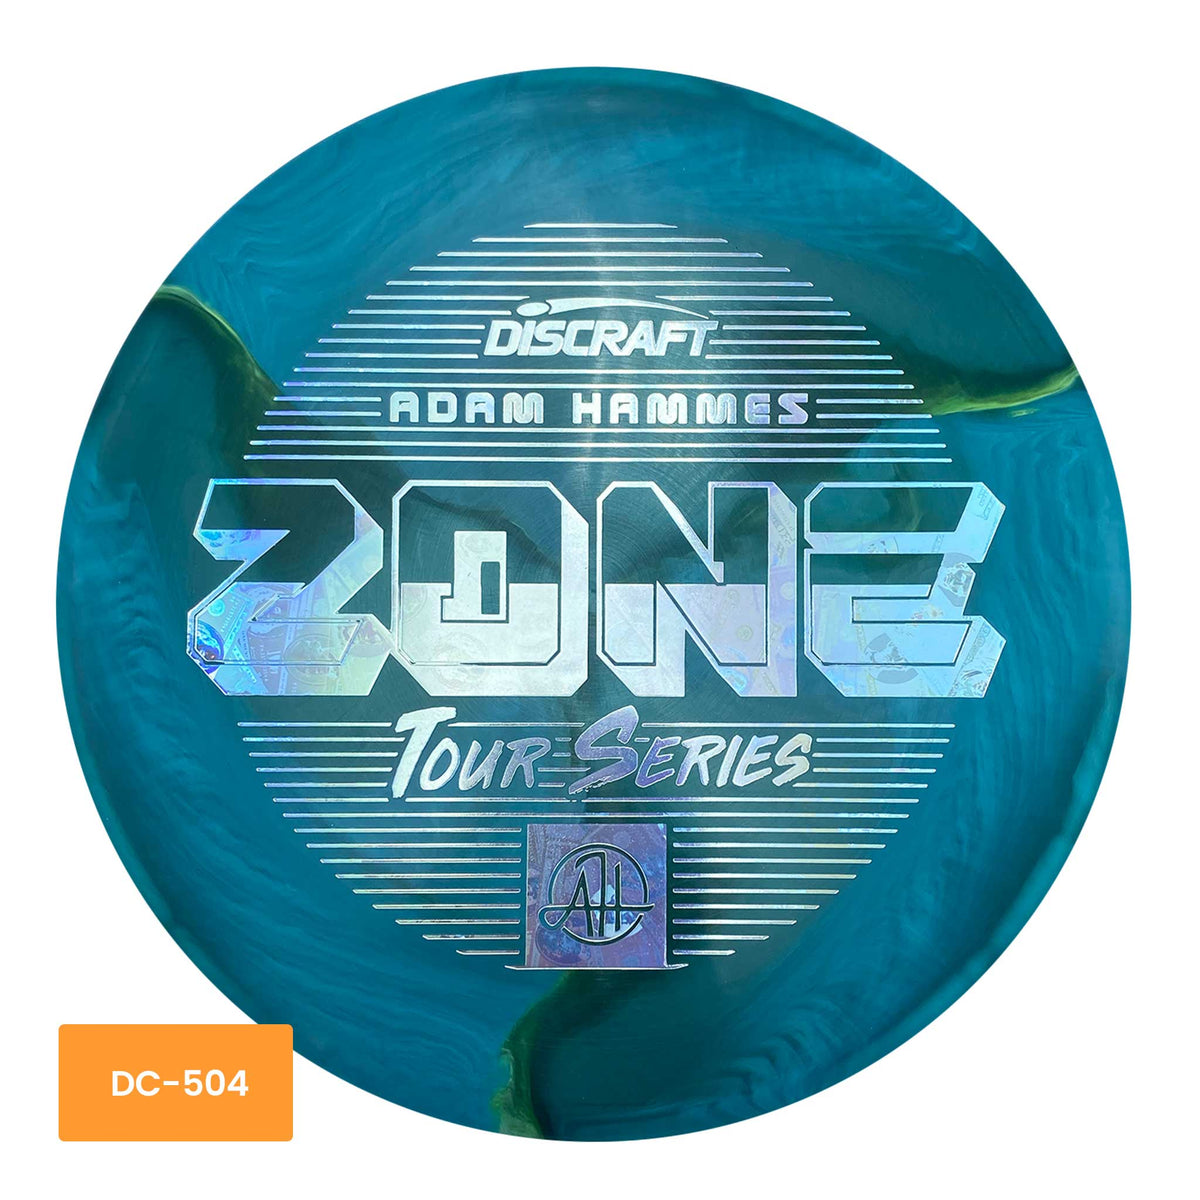 Discraft Adam Hammes 2022 Tour Series - Blue Zone putter and approach - Blue